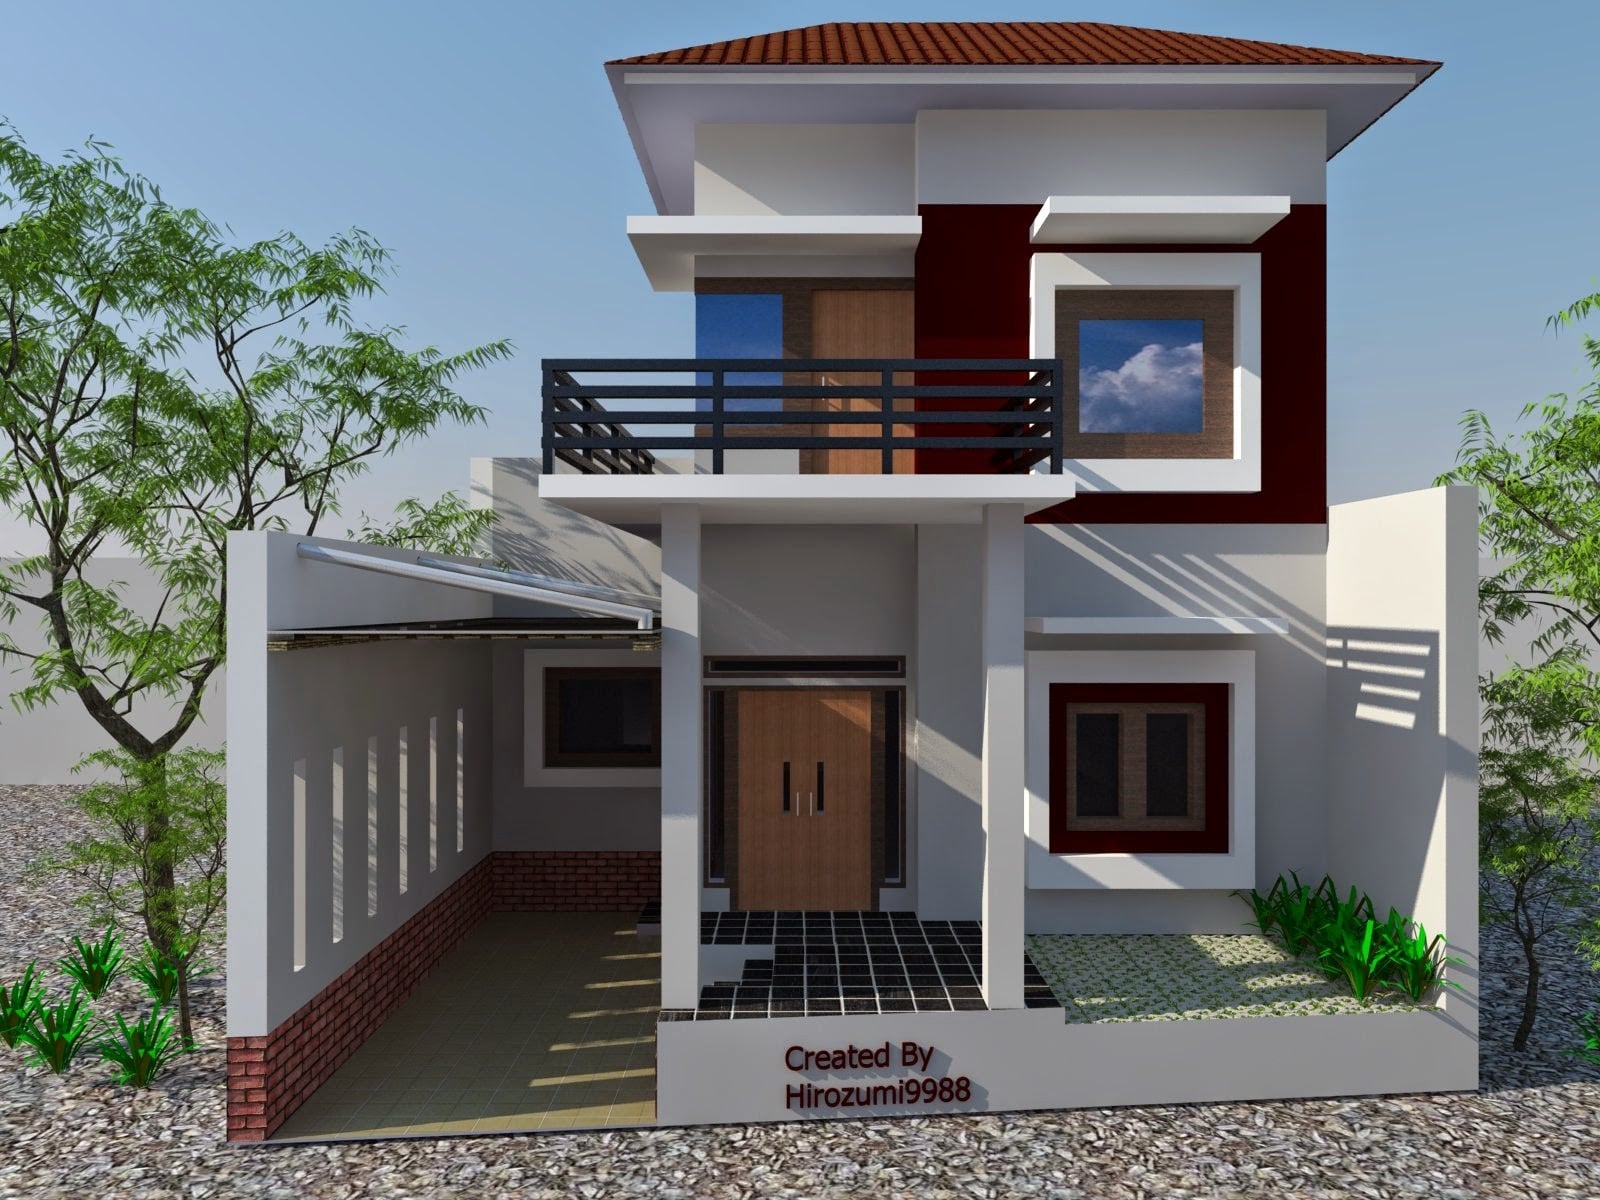 40 Contoh Desain Rumah Minimalis Sederhana Tanpa Atap Yang Wajib Kamu